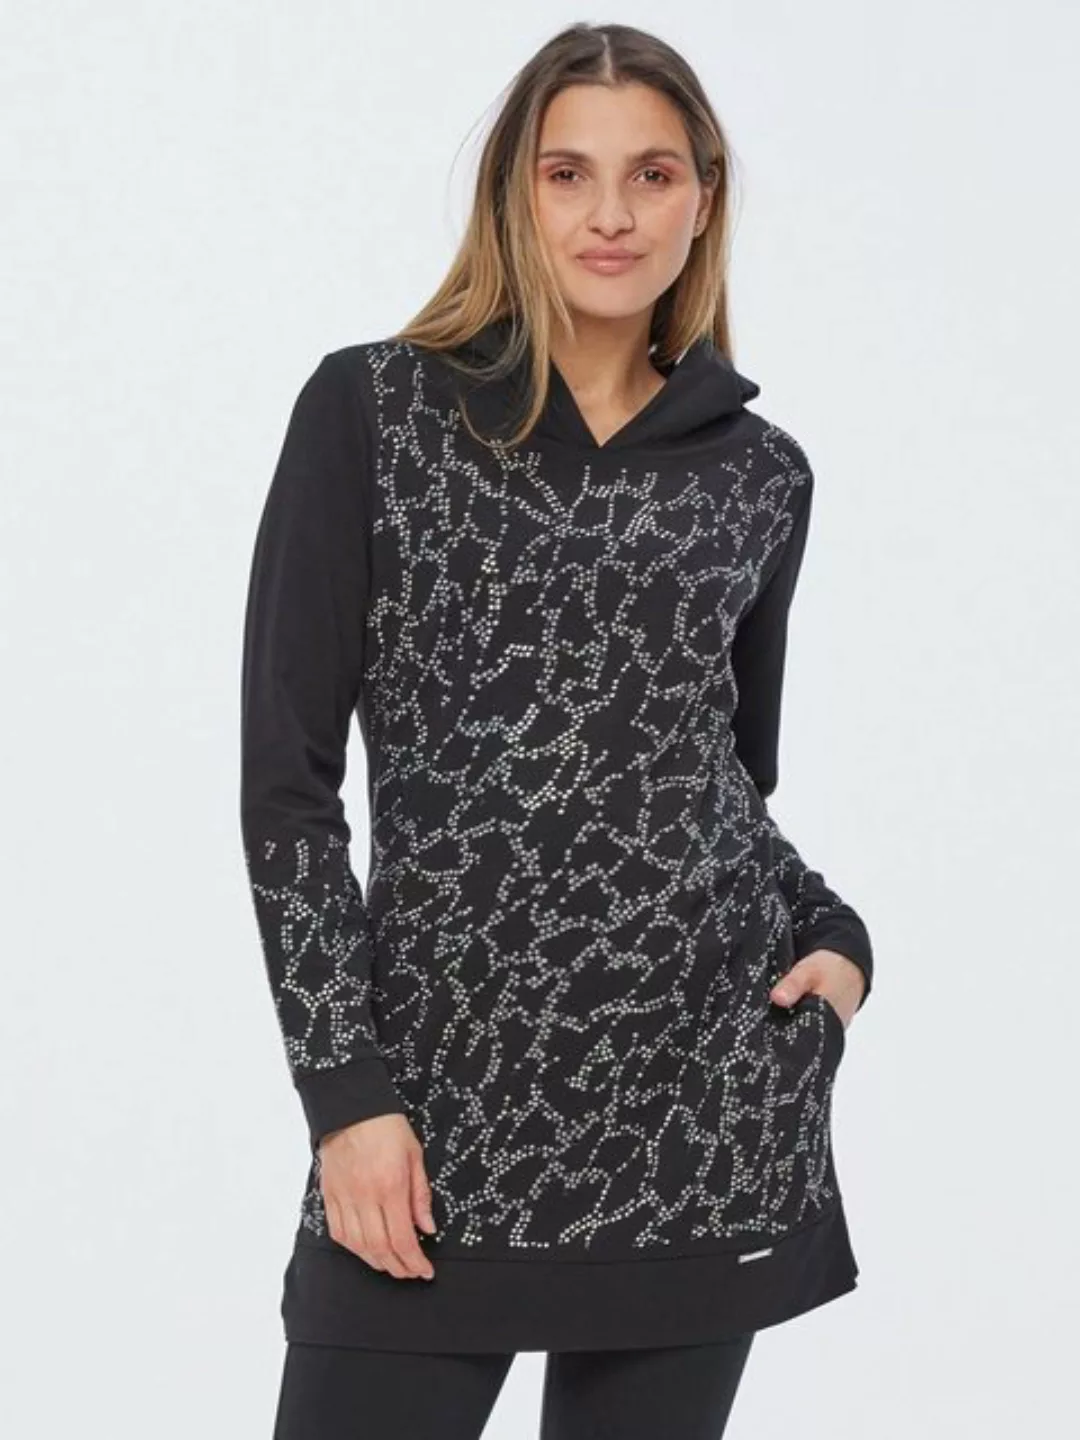 Sarah Kern Sweatshirt Longshirt koerpernah mit Nietenverzierung günstig online kaufen